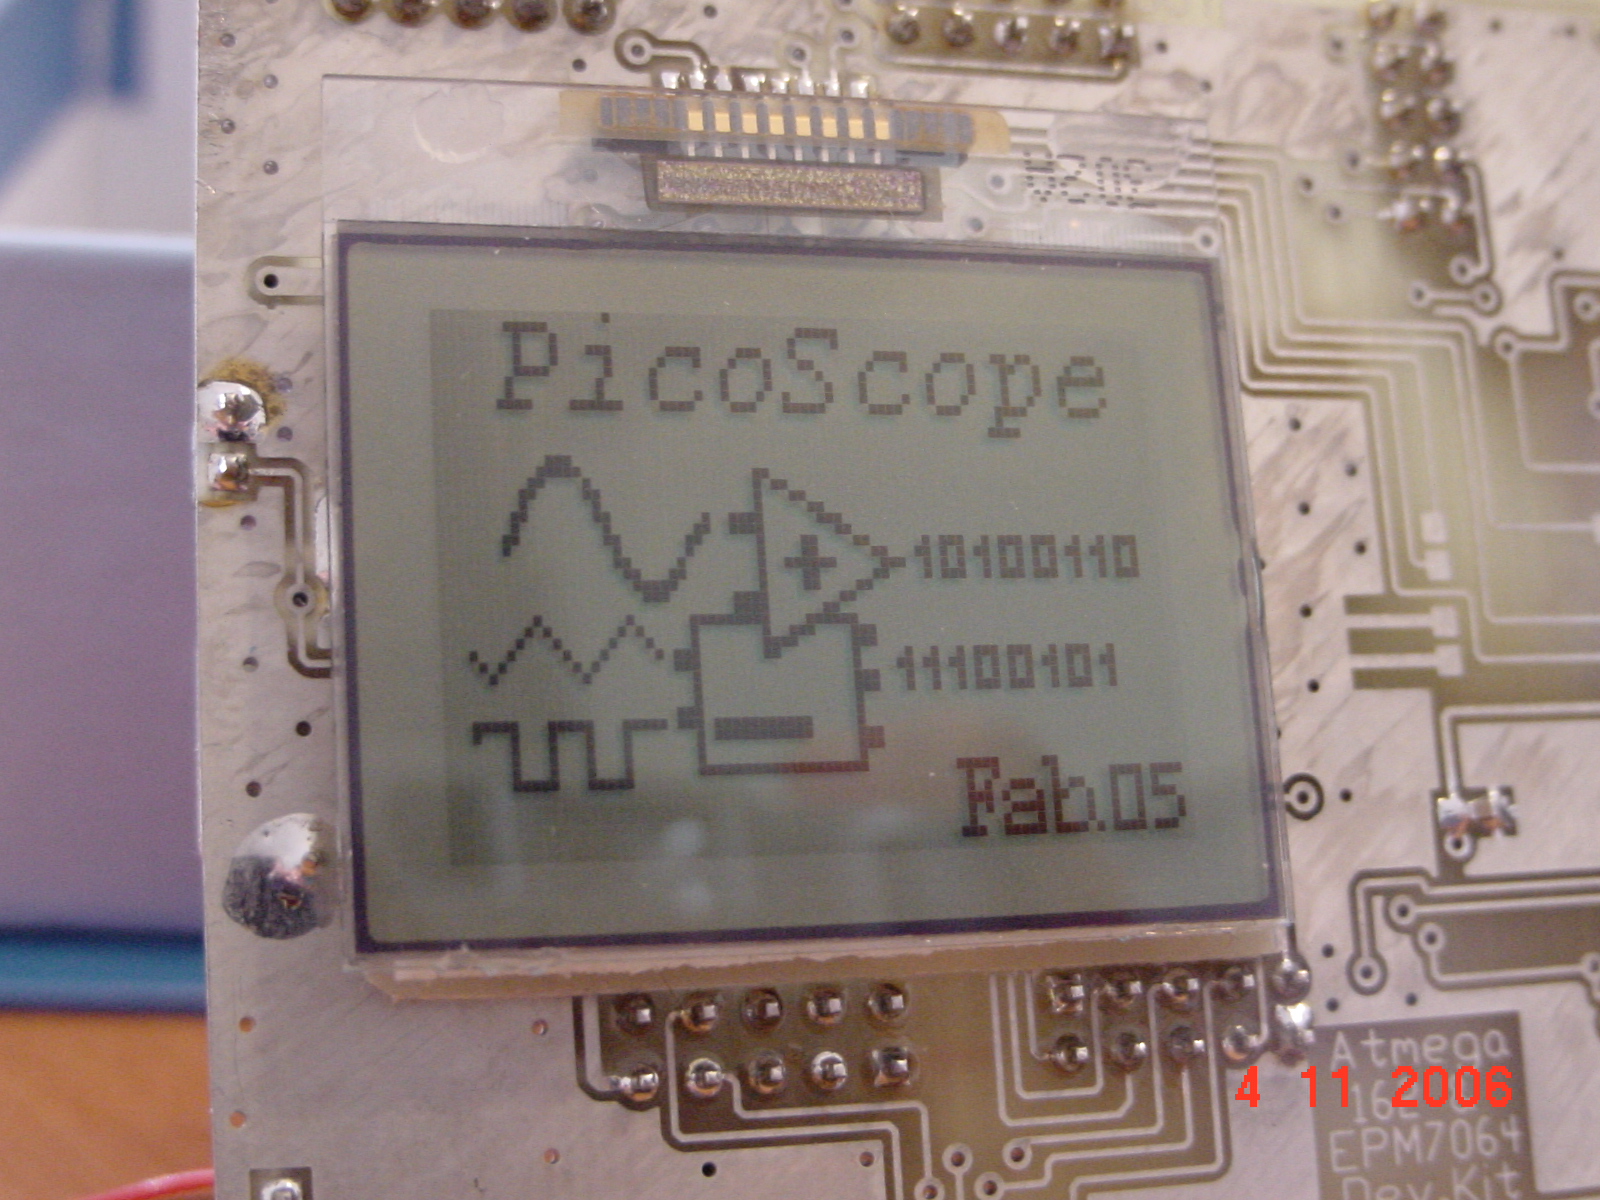 picoscope